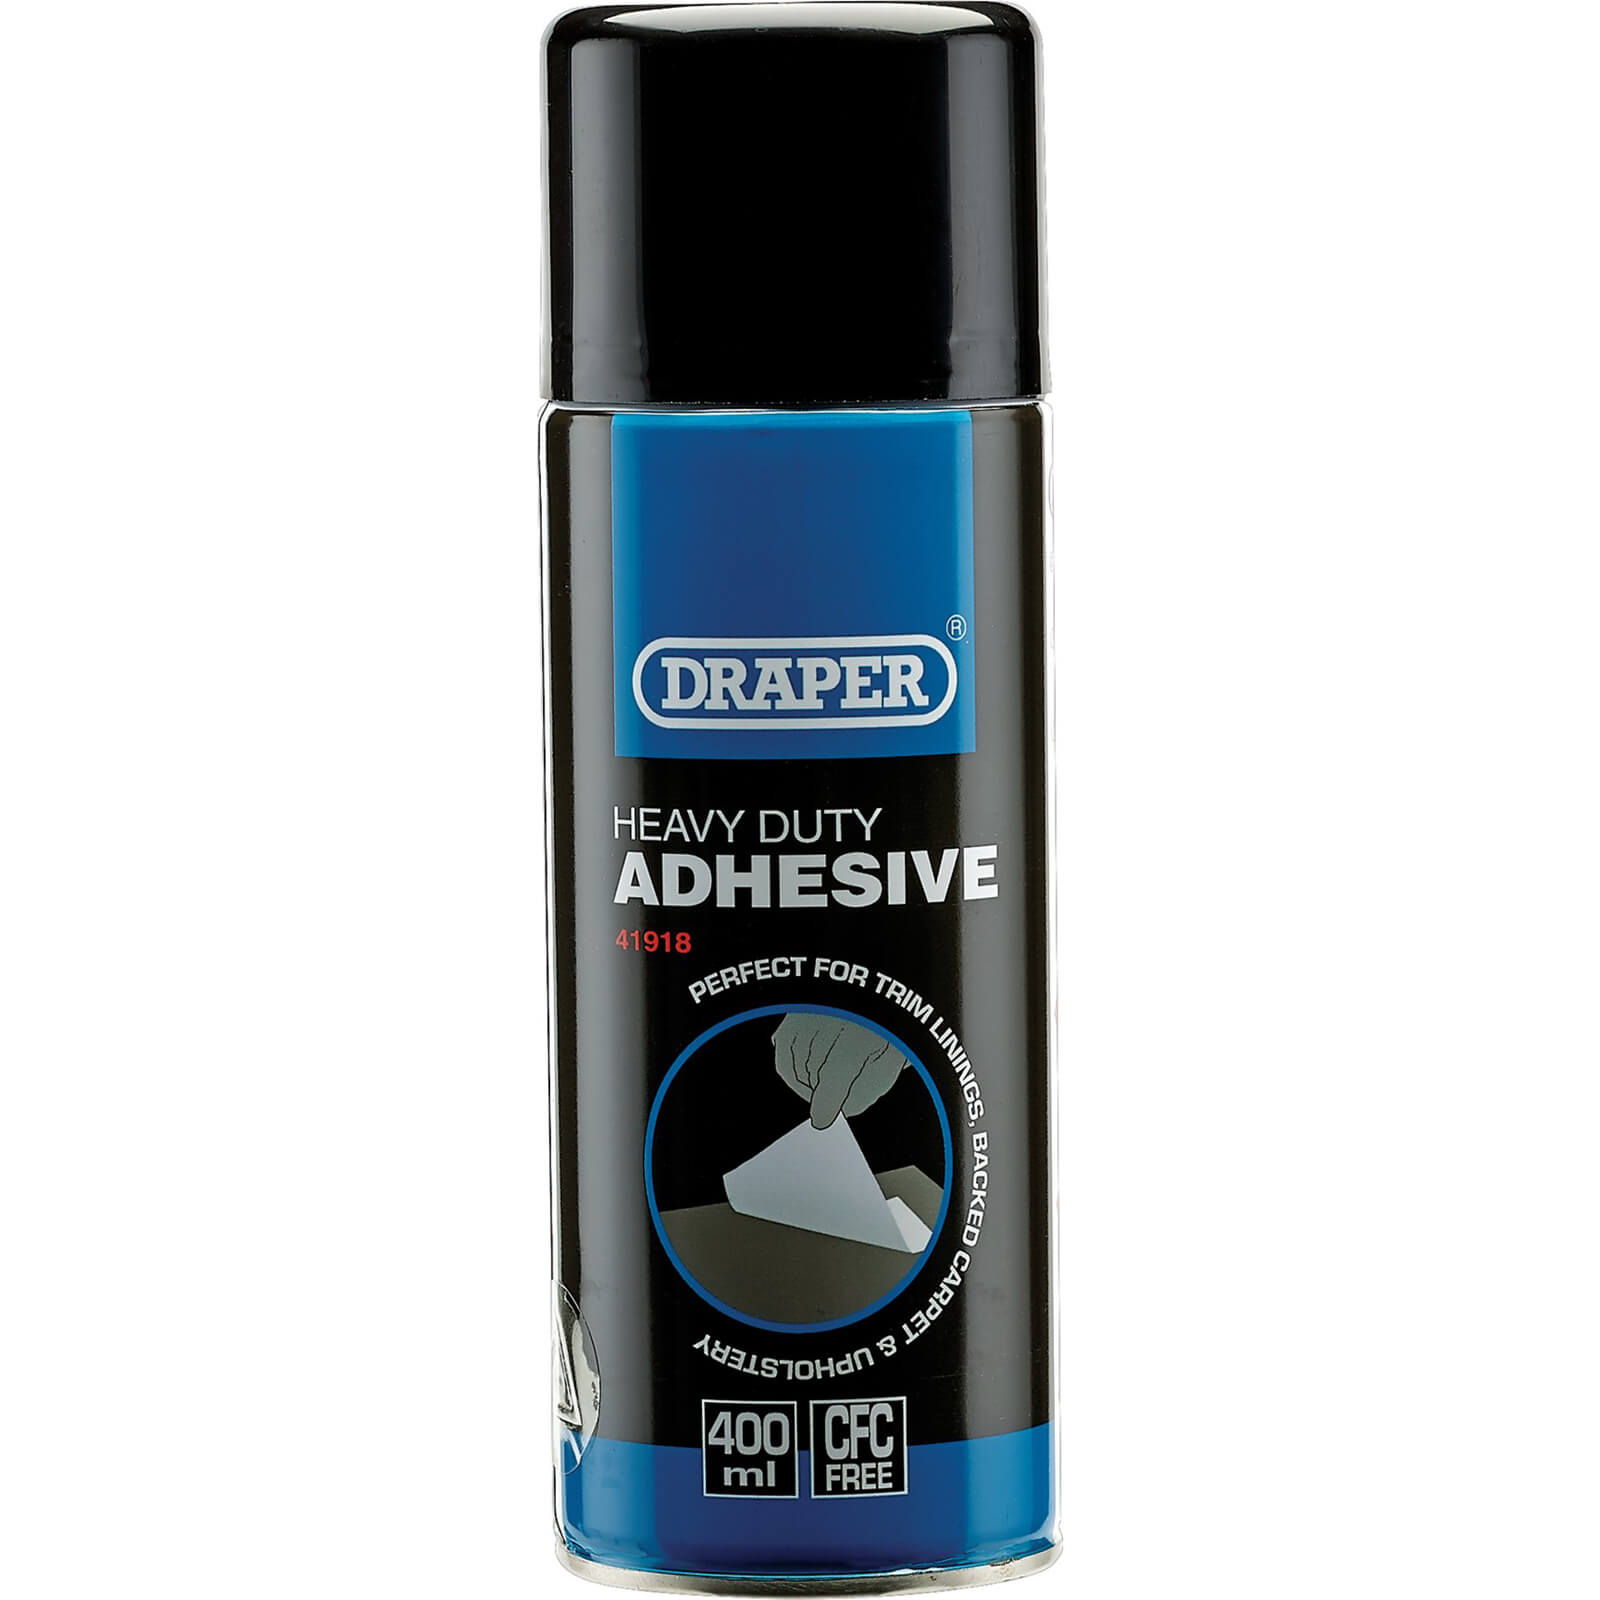 Image of Draper Heavy Duty Adhesive Spray 400ml